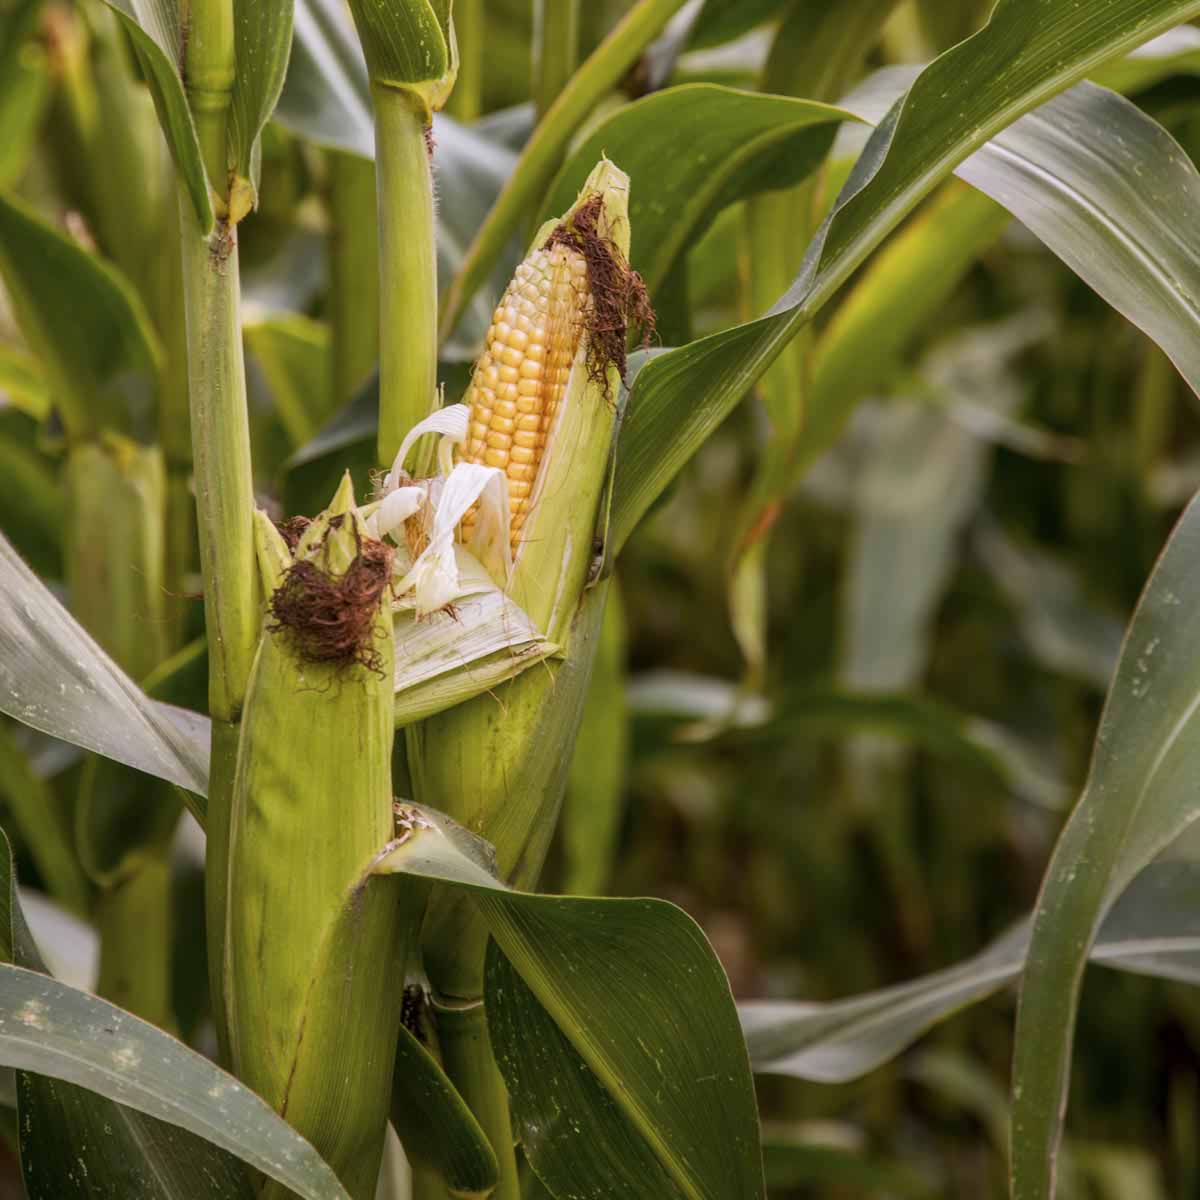 Ripe corn ear on plant in field.